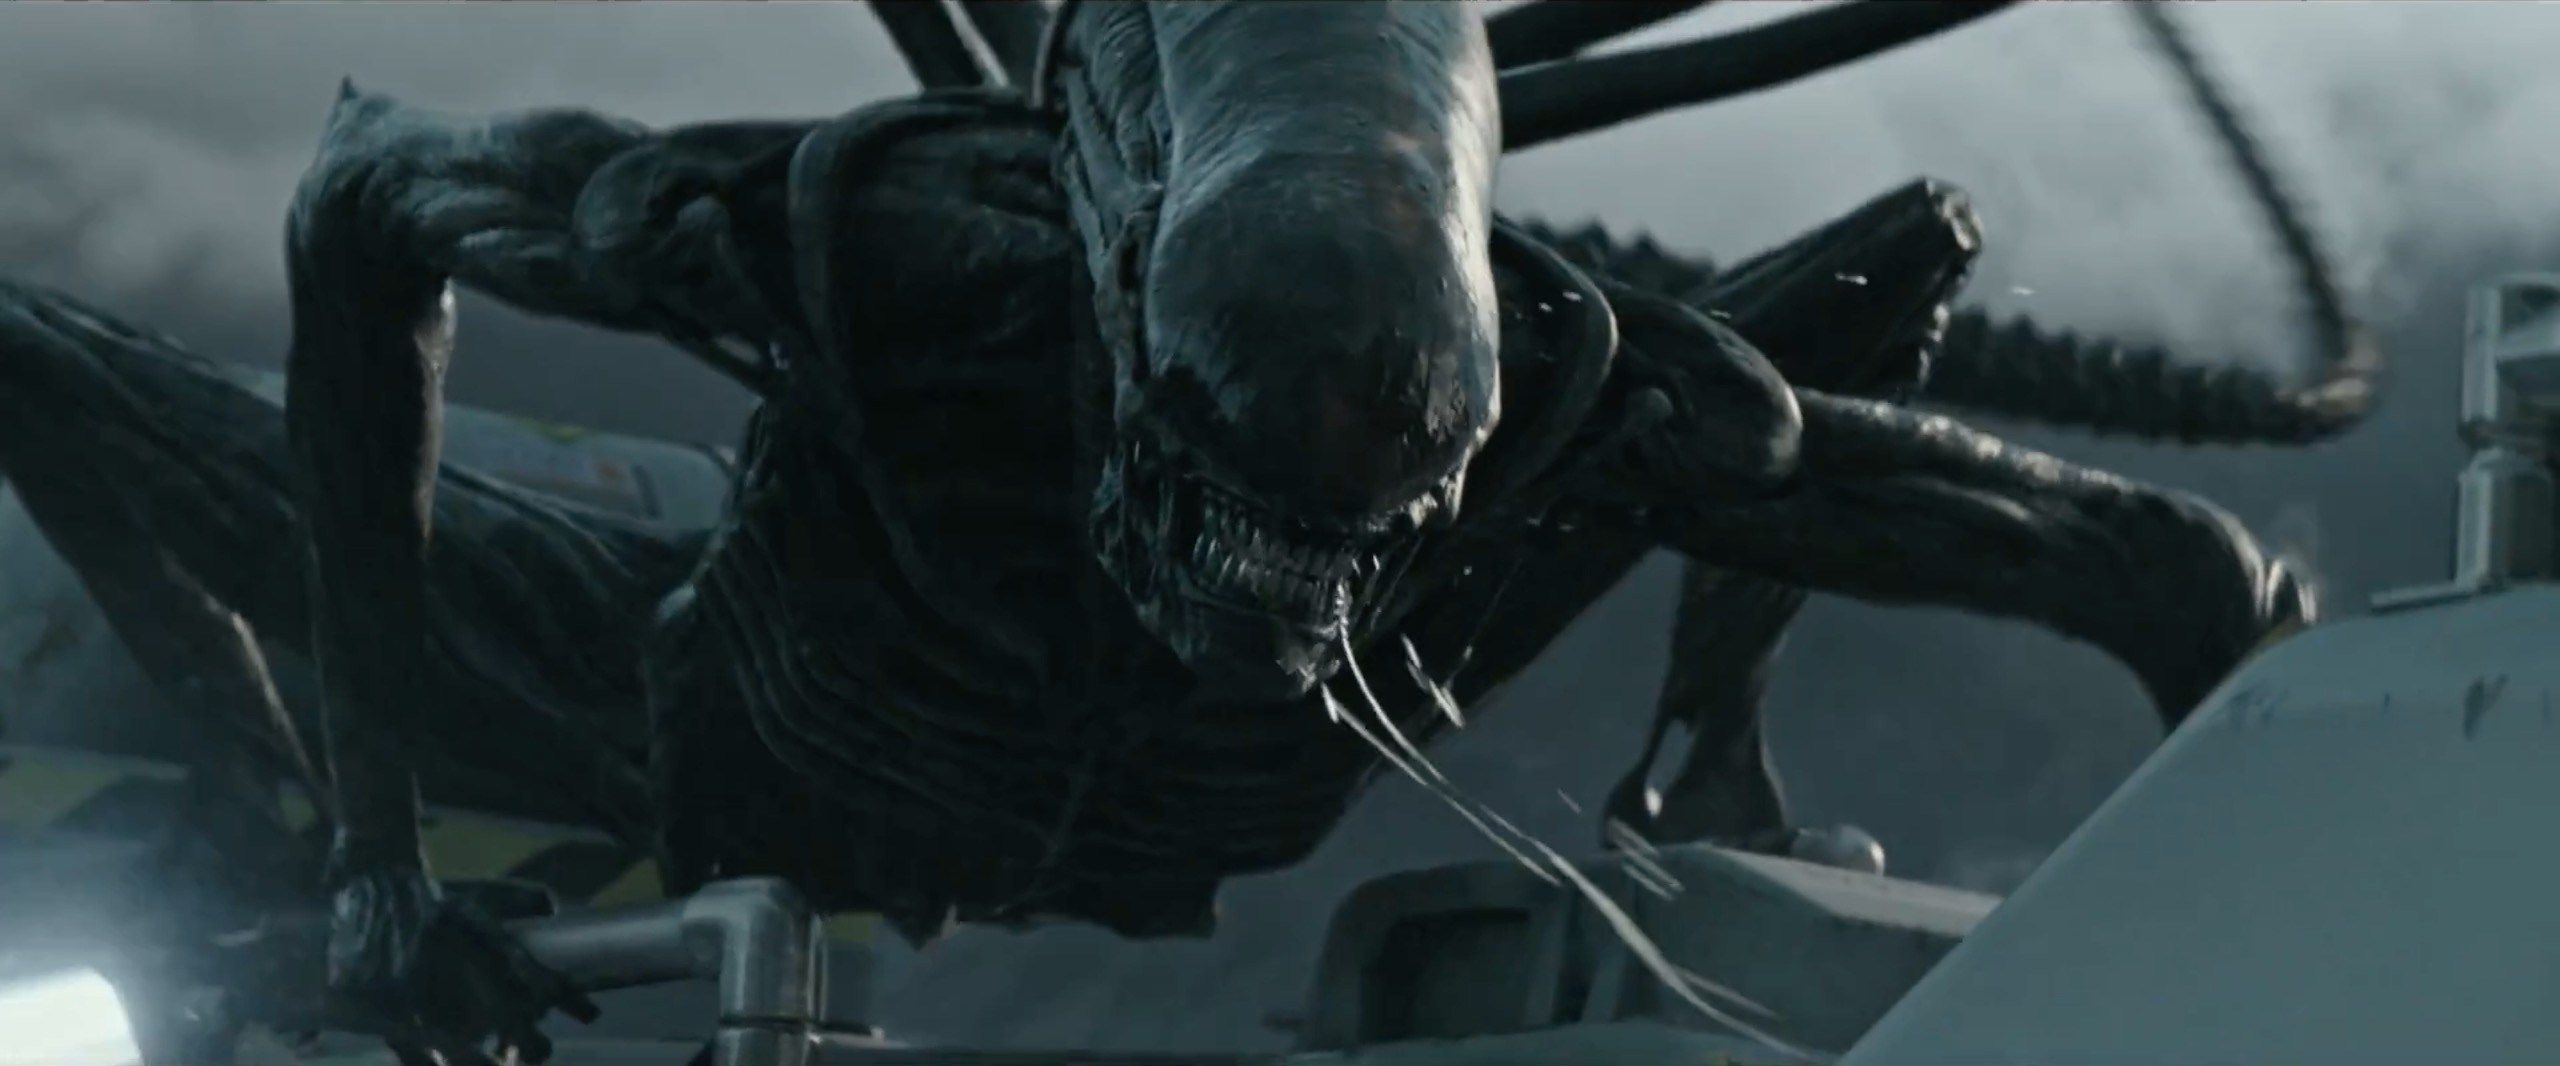 „Alien: Covenant” oferuje tanie emocje, a reszta to pusta przestrzeń